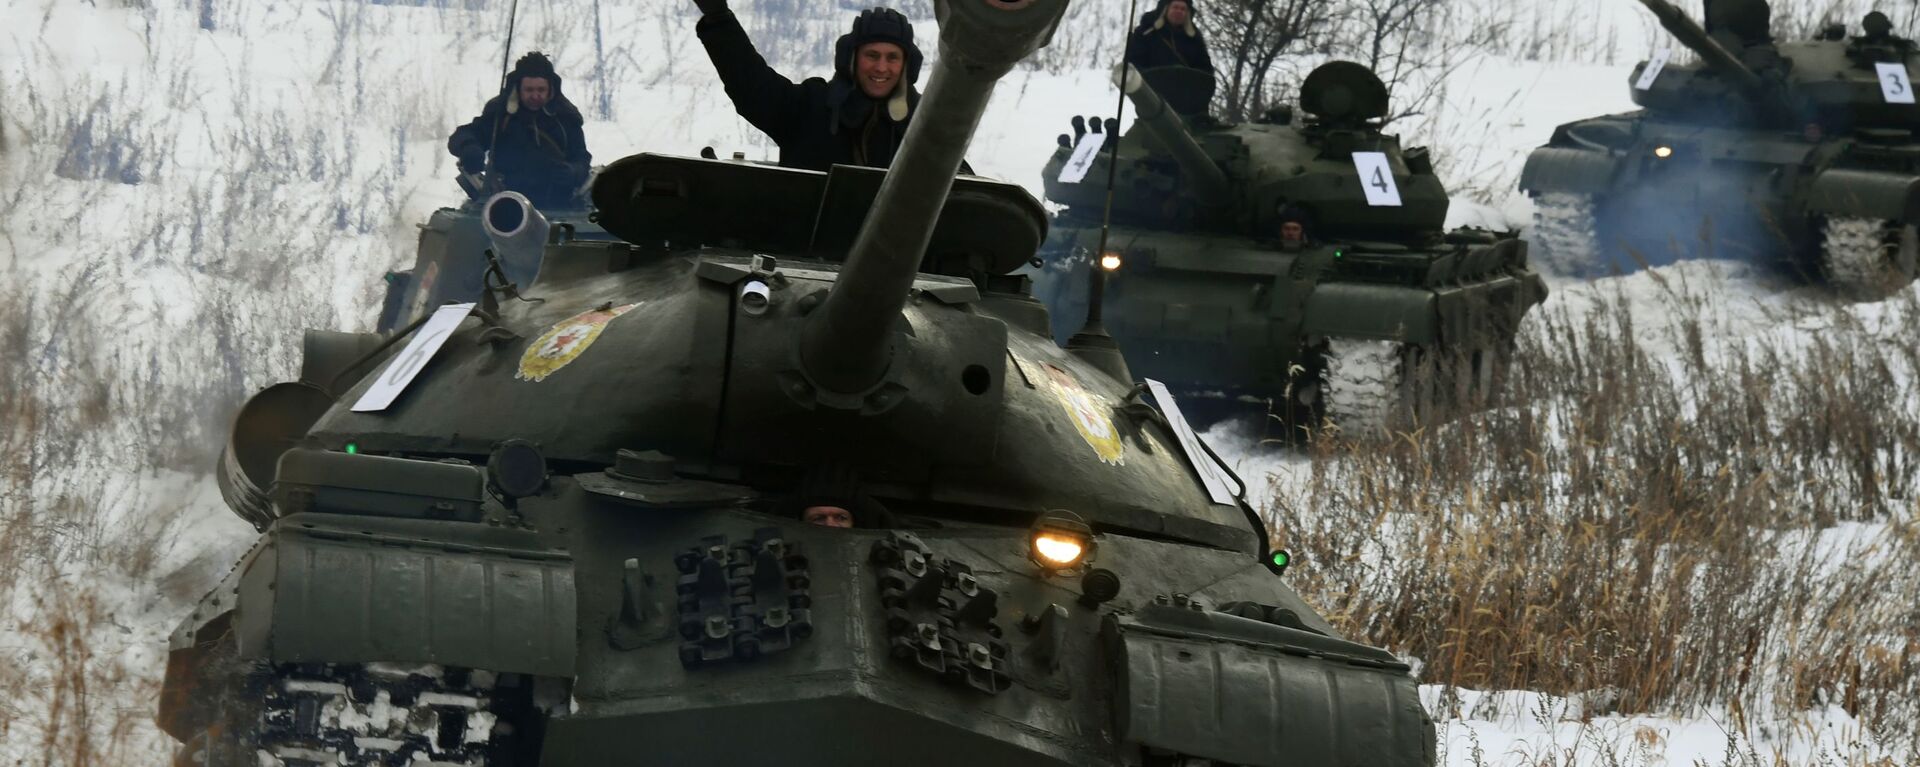 Sovetskiy tajeliy tank IS-3 vo vremya pokazatelnogo viezda bronetankovoy texniki  v Primorskom krae - Sputnik O‘zbekiston, 1920, 23.11.2021